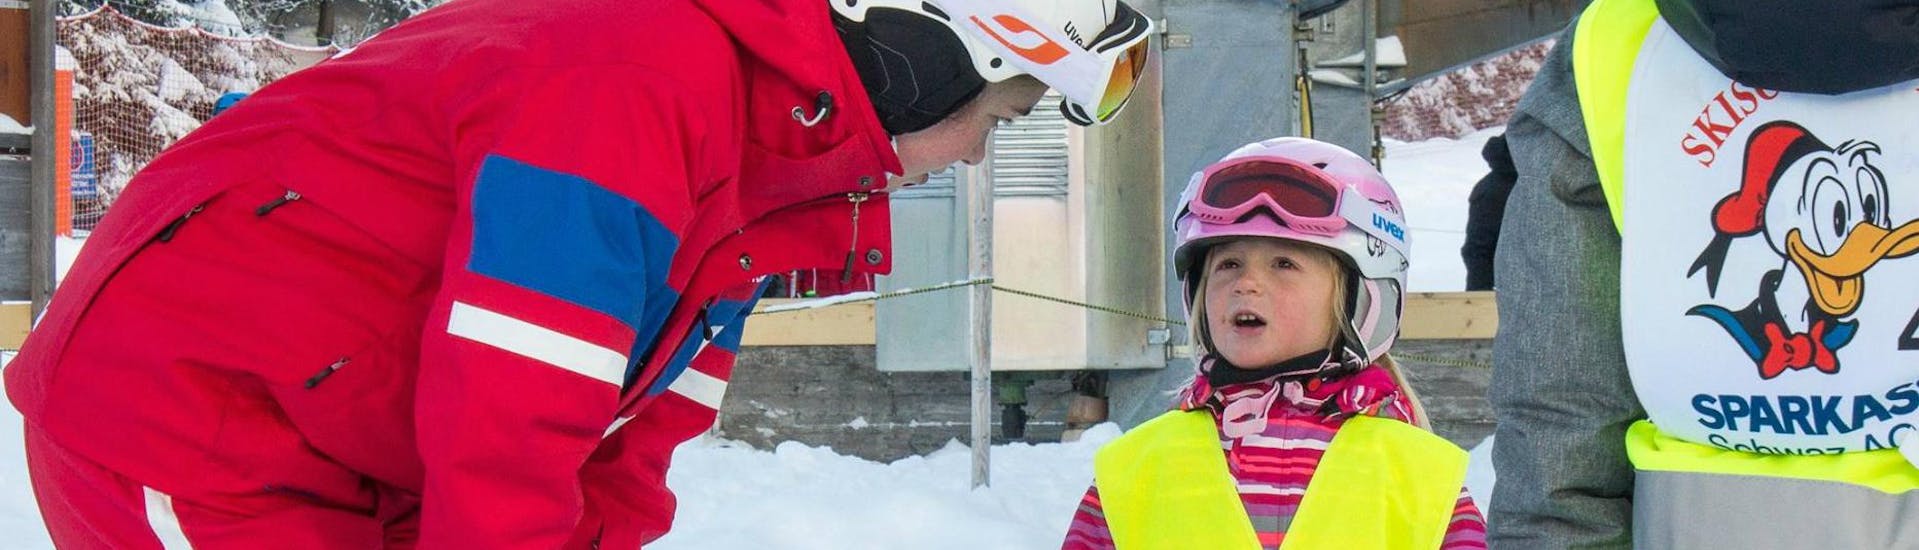 Privé-skilessen voor kinderen (vanaf 4 jaar) van alle niveaus - Fügen.